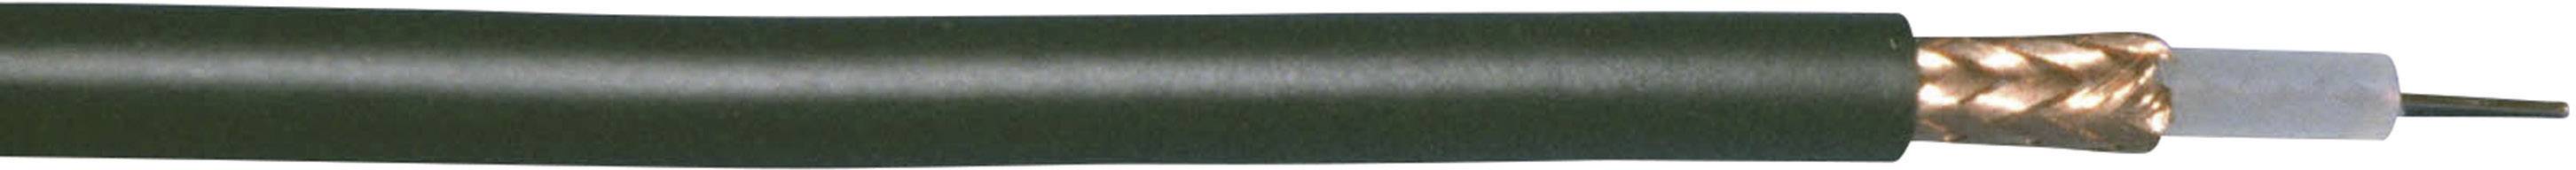 BEDEA Koaxialkabel Außen-Durchmesser: 2.67 mm RG174 50 ¿ Schwarz Bedea 10890911 Meterware